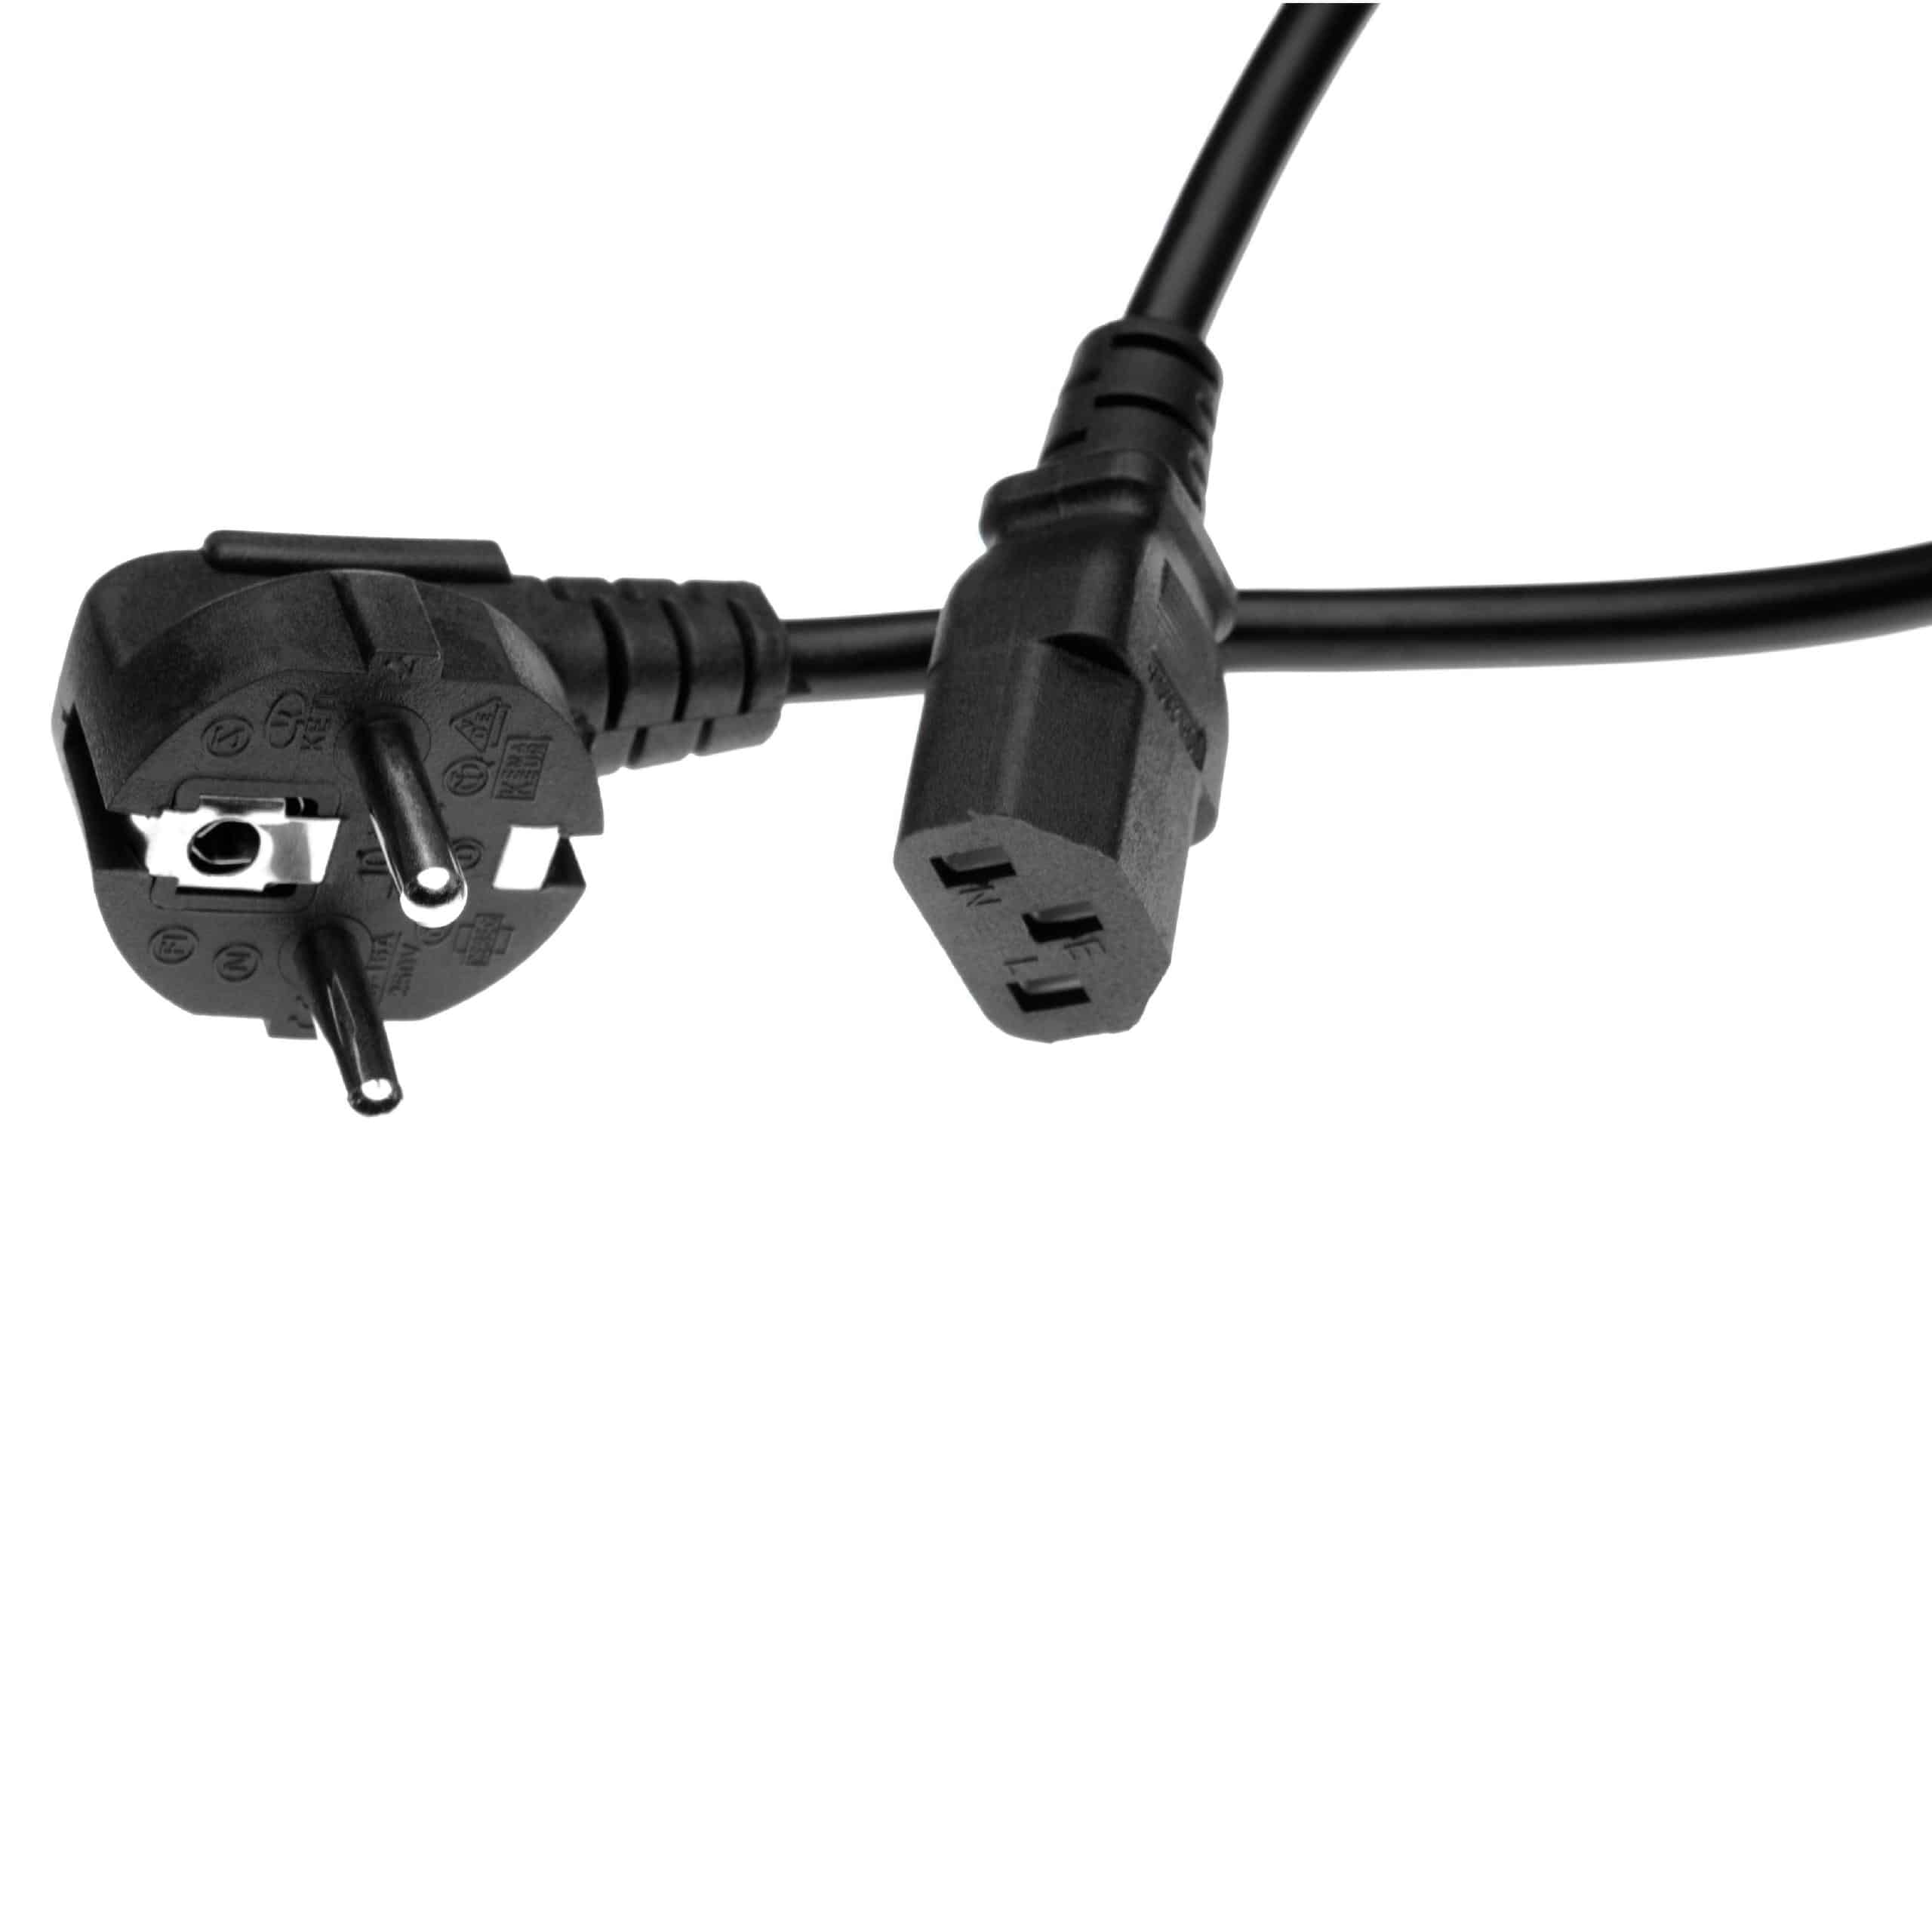 2x Kabel zasilający C13 wtyczka Euro do urządzeń np. monitora komputera - 1,2 m